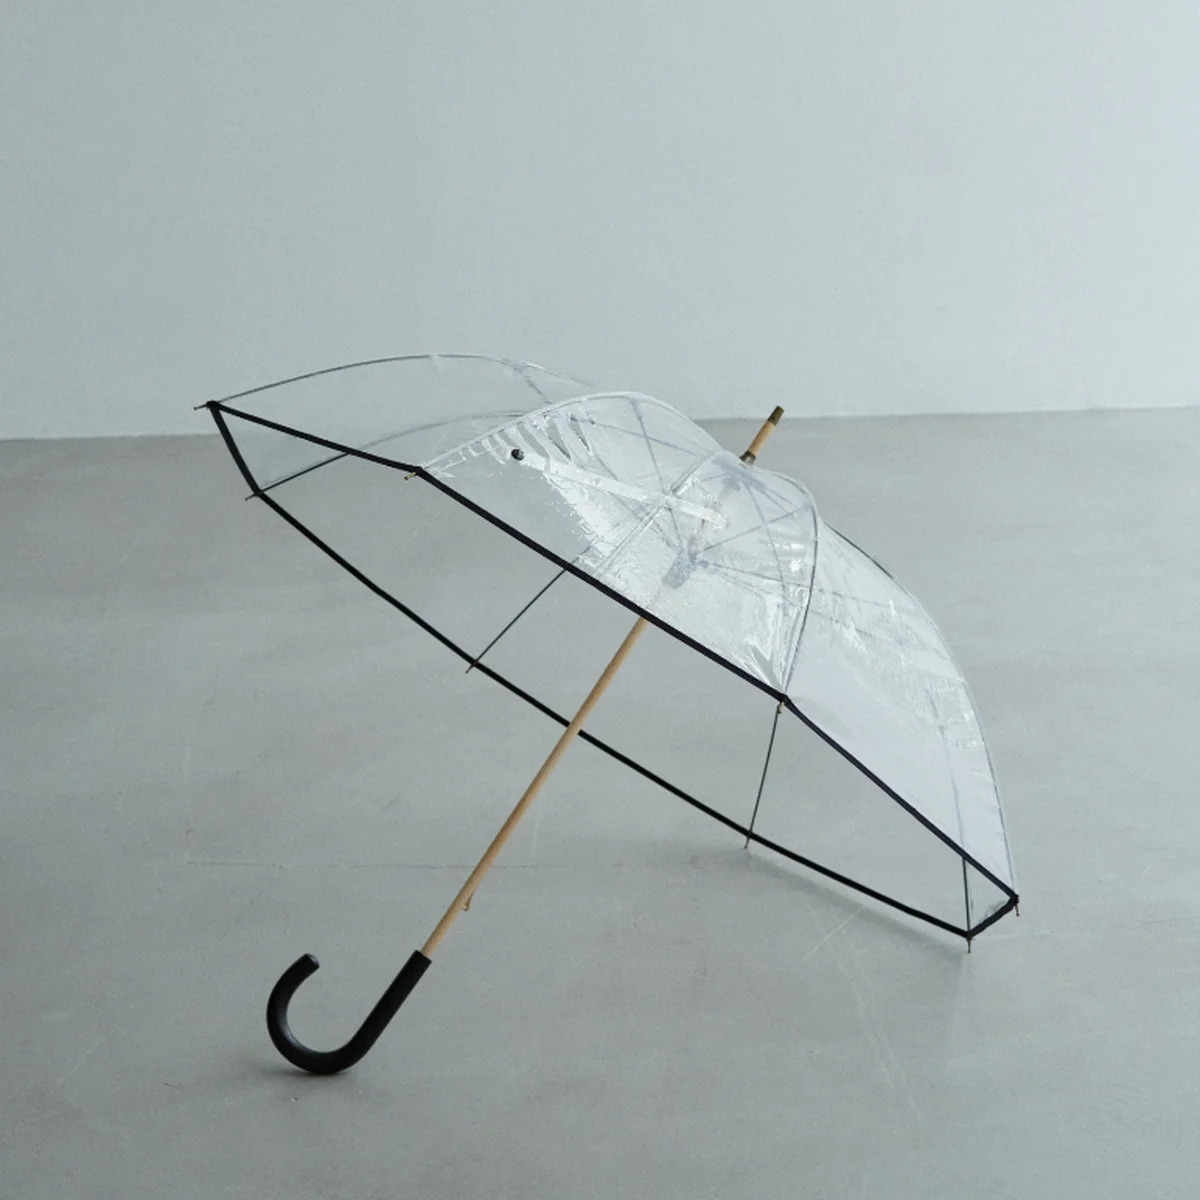 使い捨てのビニール傘はもう選べない！ 【イレーヴ】が高級老舗ビニール傘専門メーカーとタッグを組み、オリジナル傘を発売